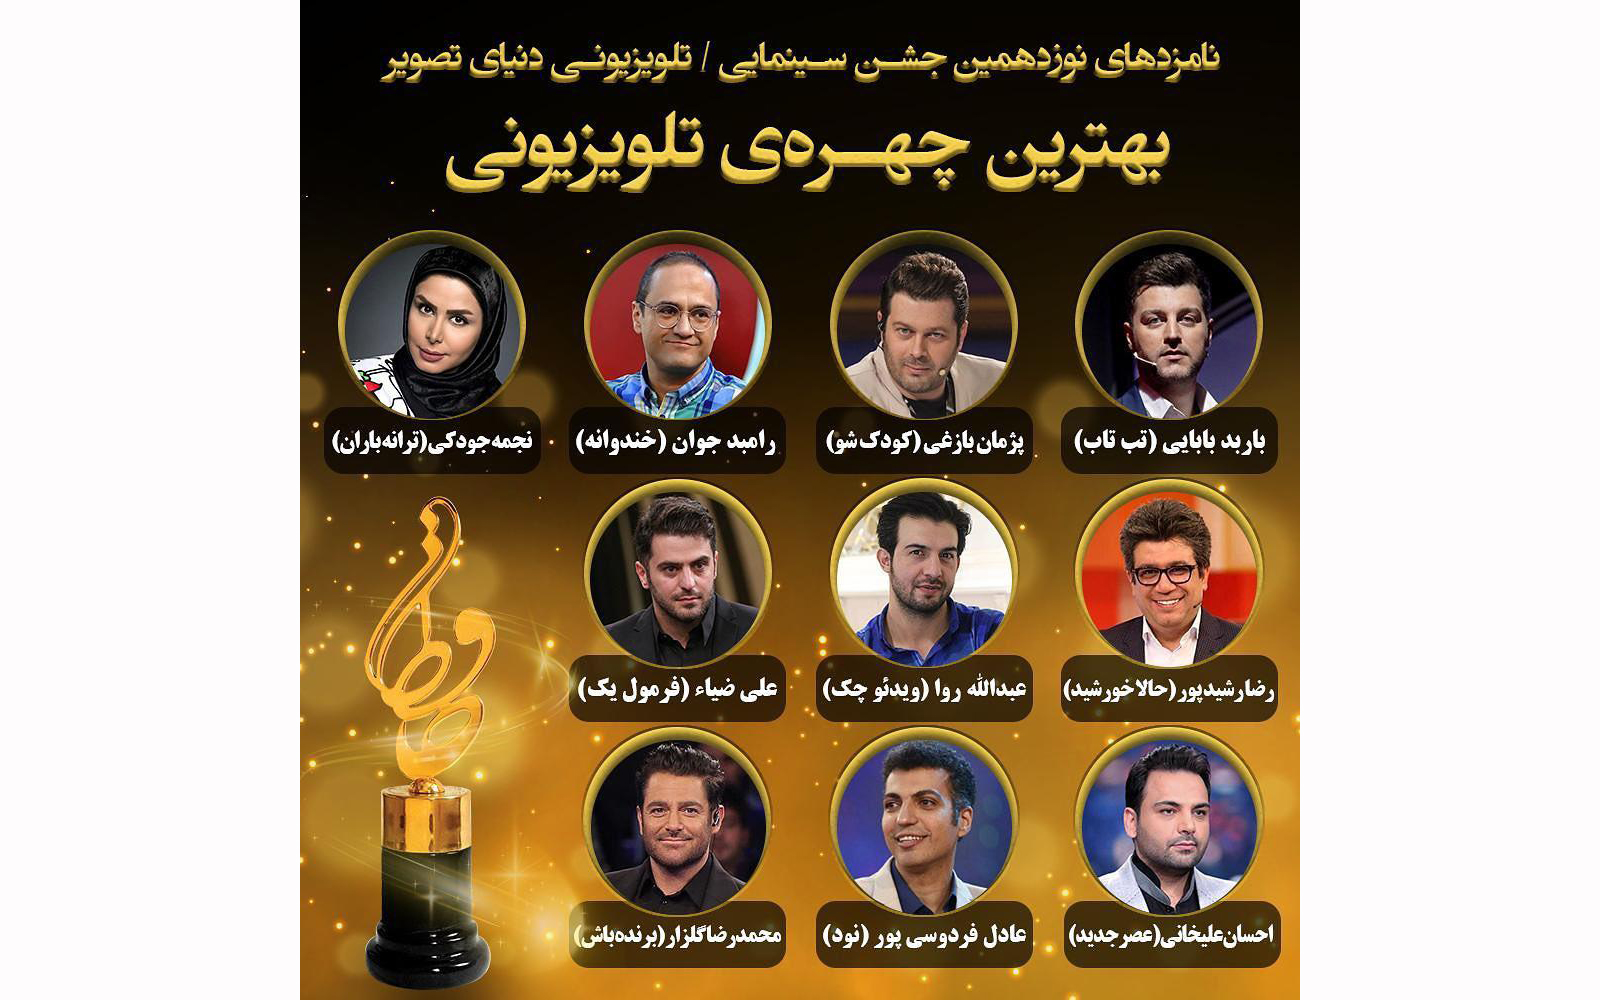 بهترین چهره تلویزیونی جشن حافظ